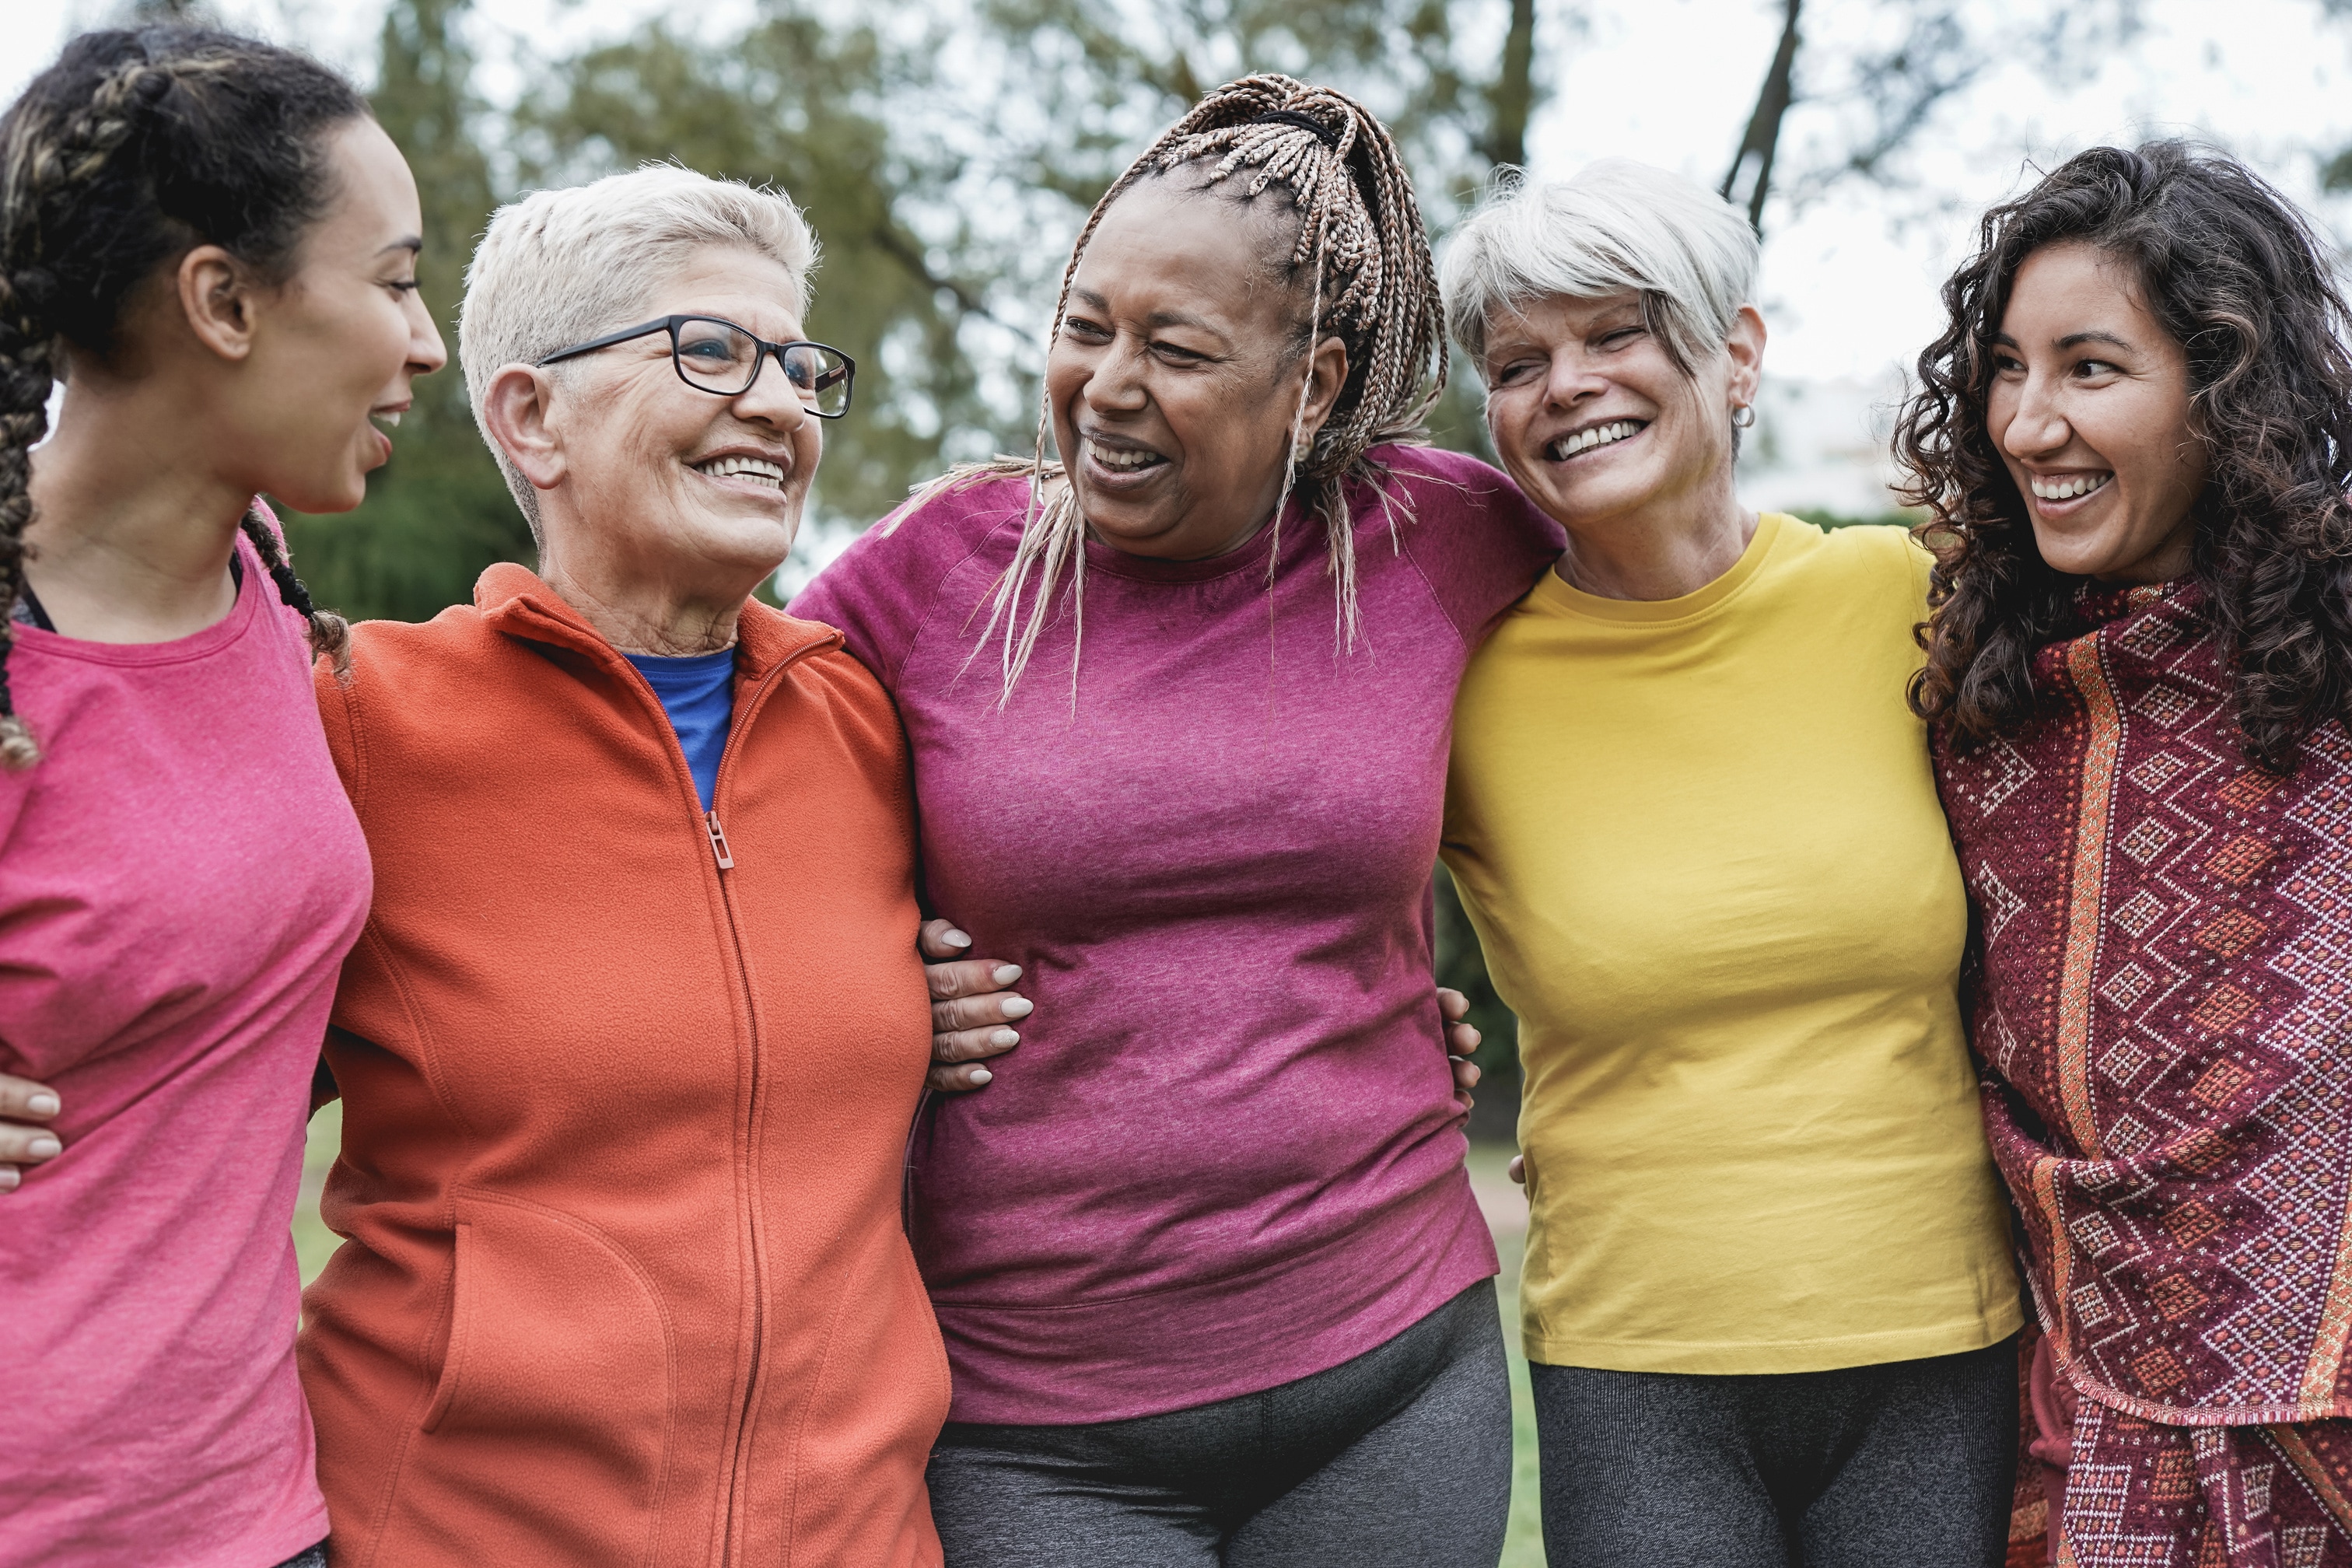 Cinq femmes d’origines et d’âges différents se tiennent bras dessus dessous en plein air. Elles sourient ensemble.